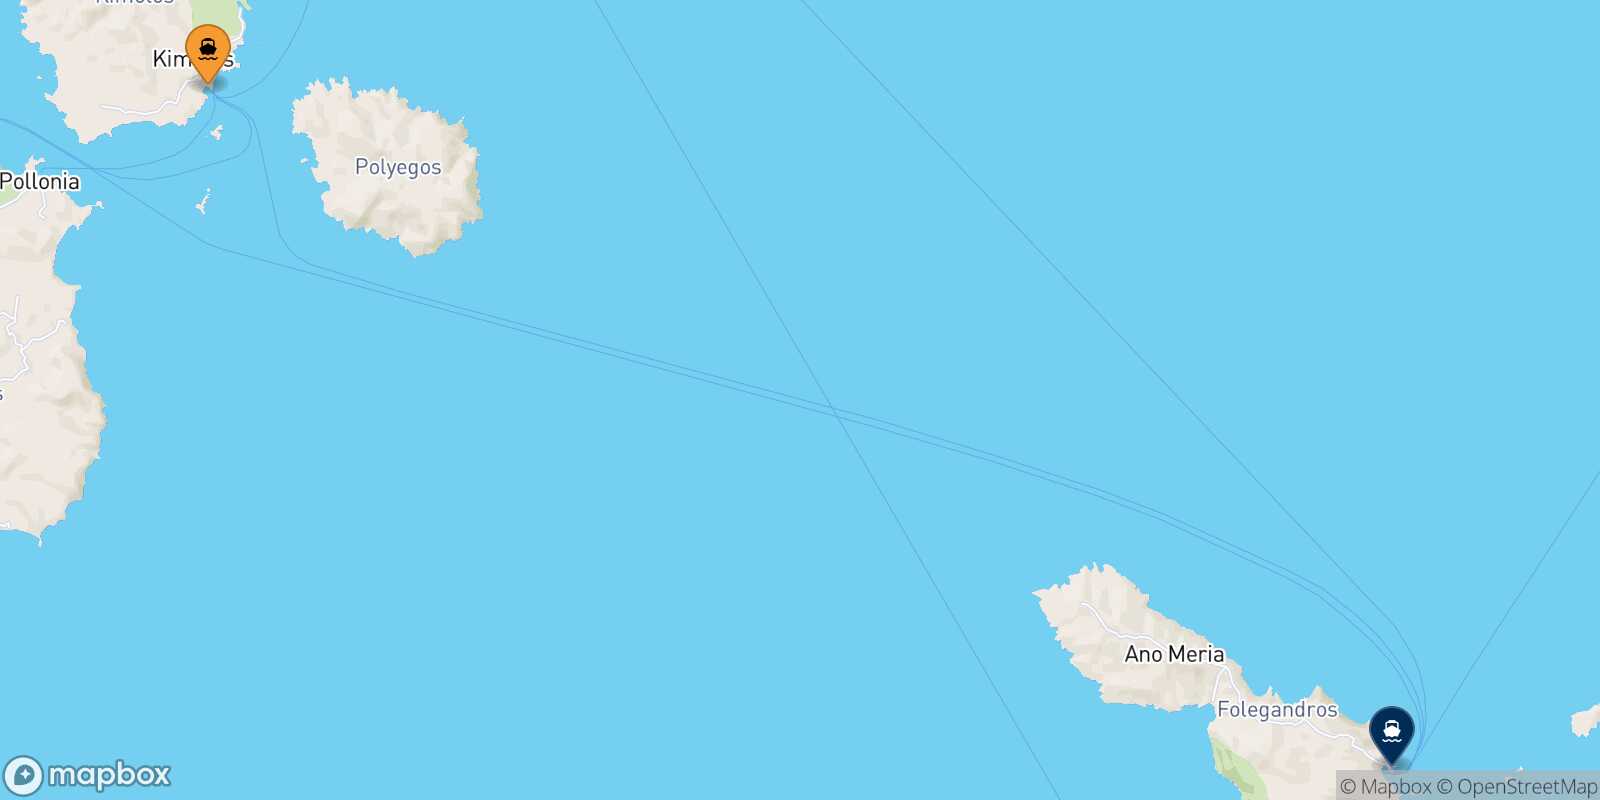 Kimolos Folegandros route map